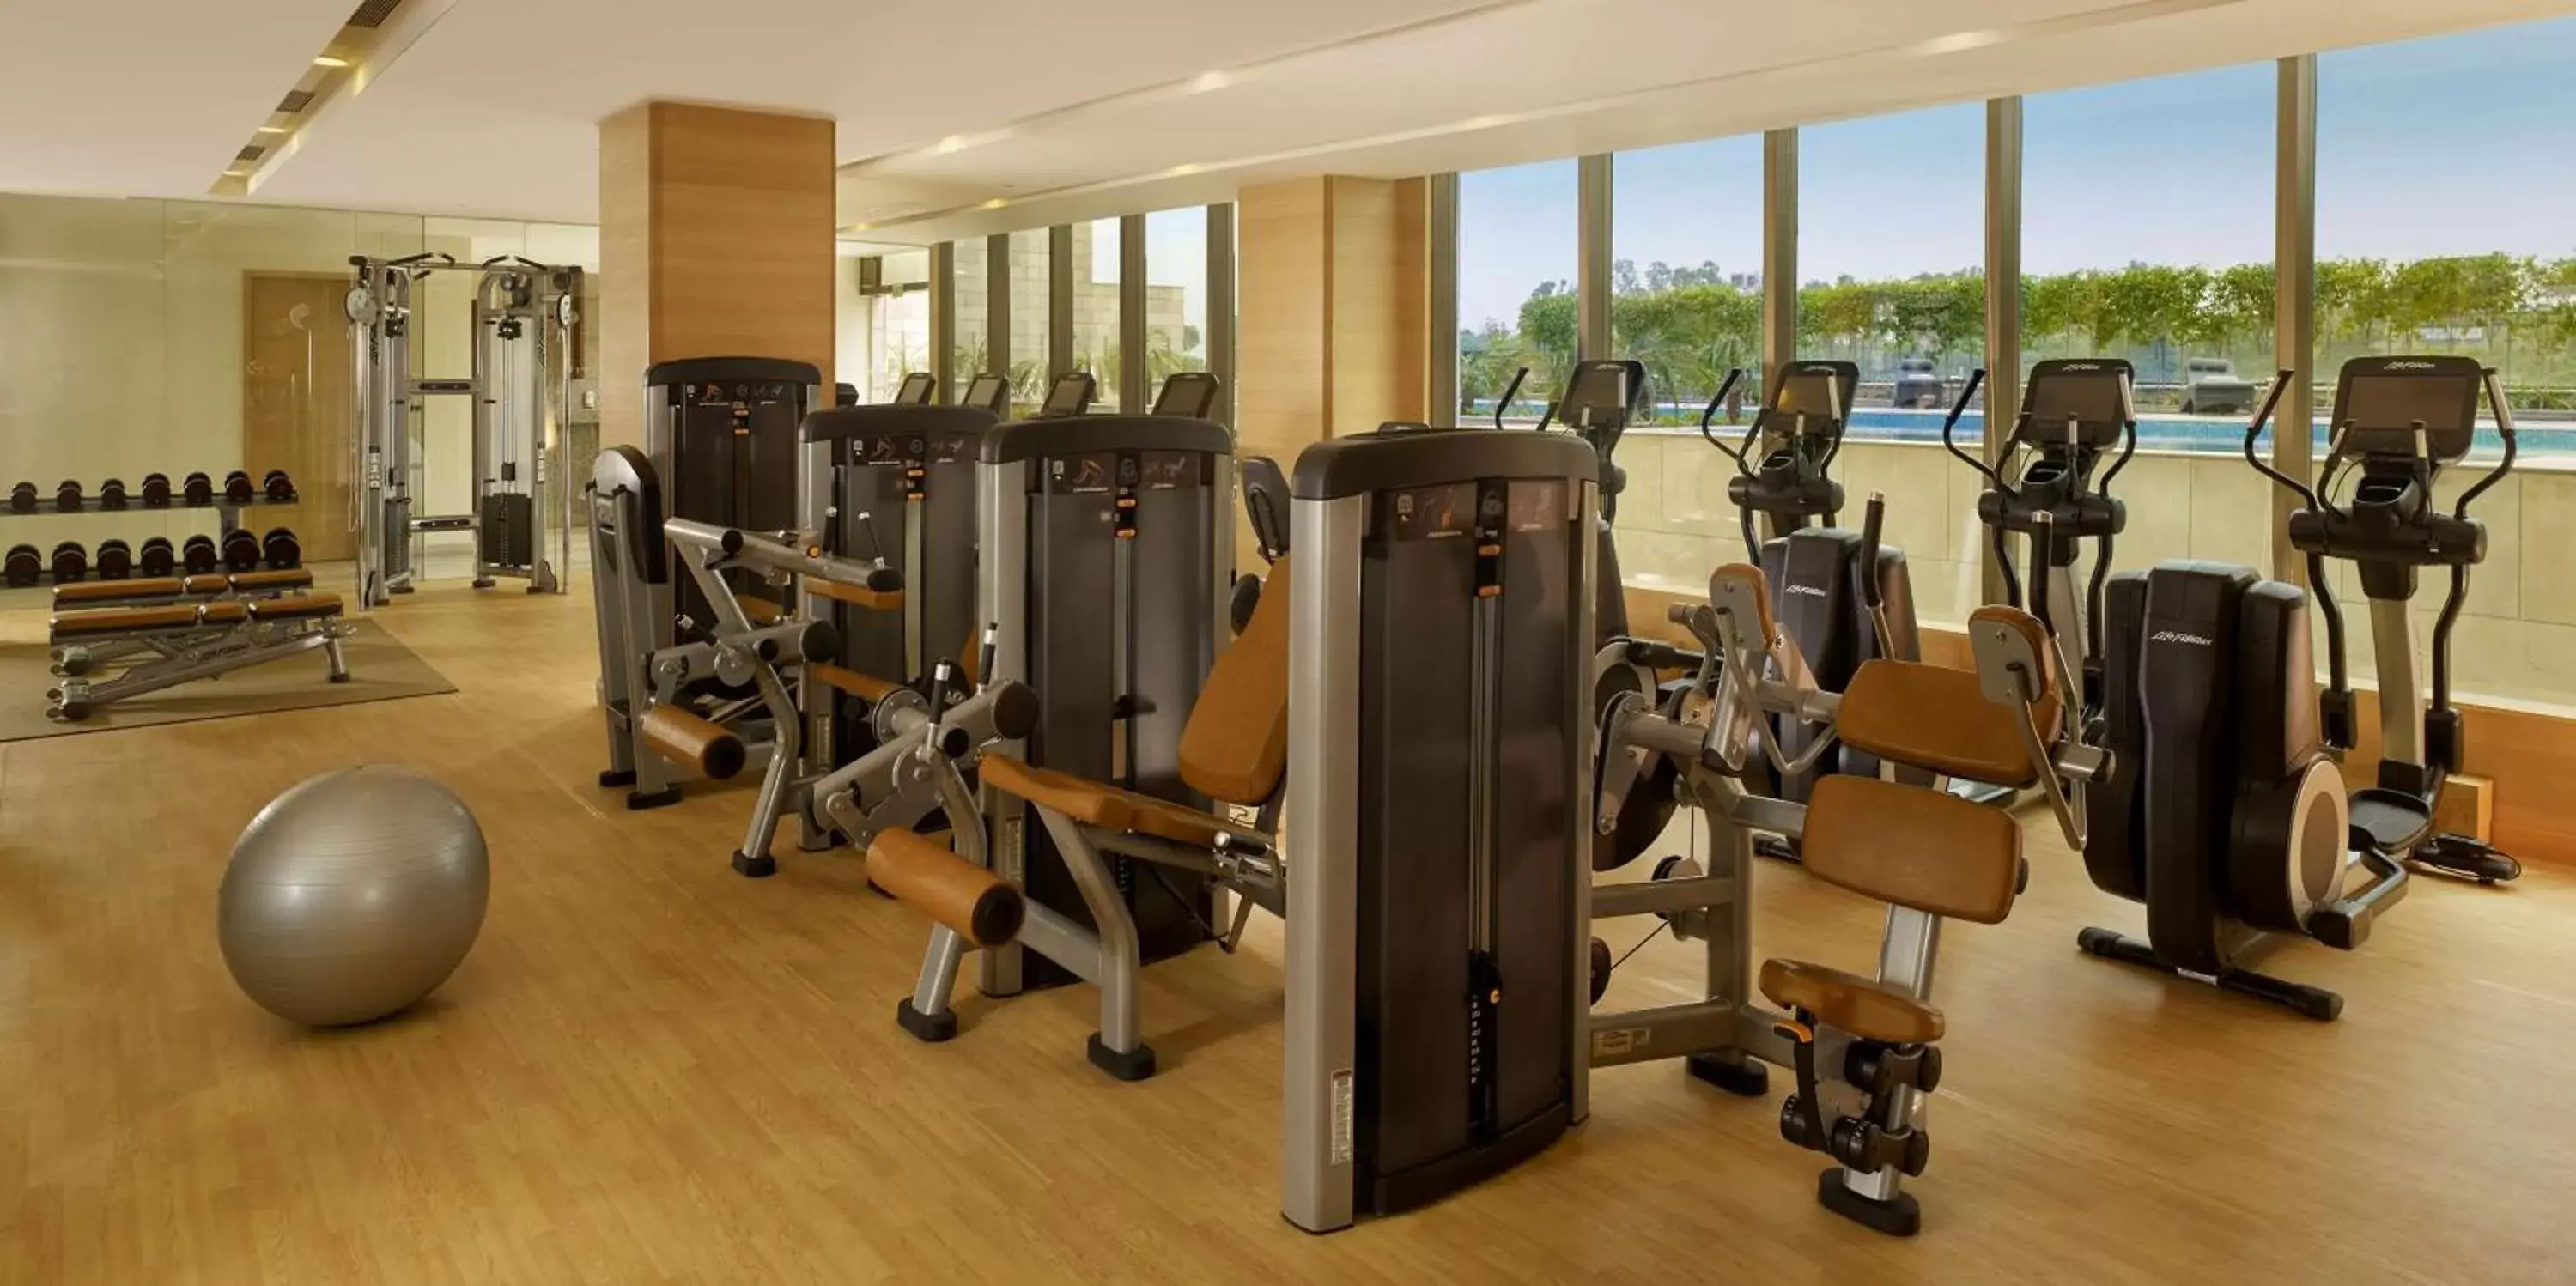 Fitness centre/facilities, Fitness Center/Facilities in Hyatt Regency Chandigarh